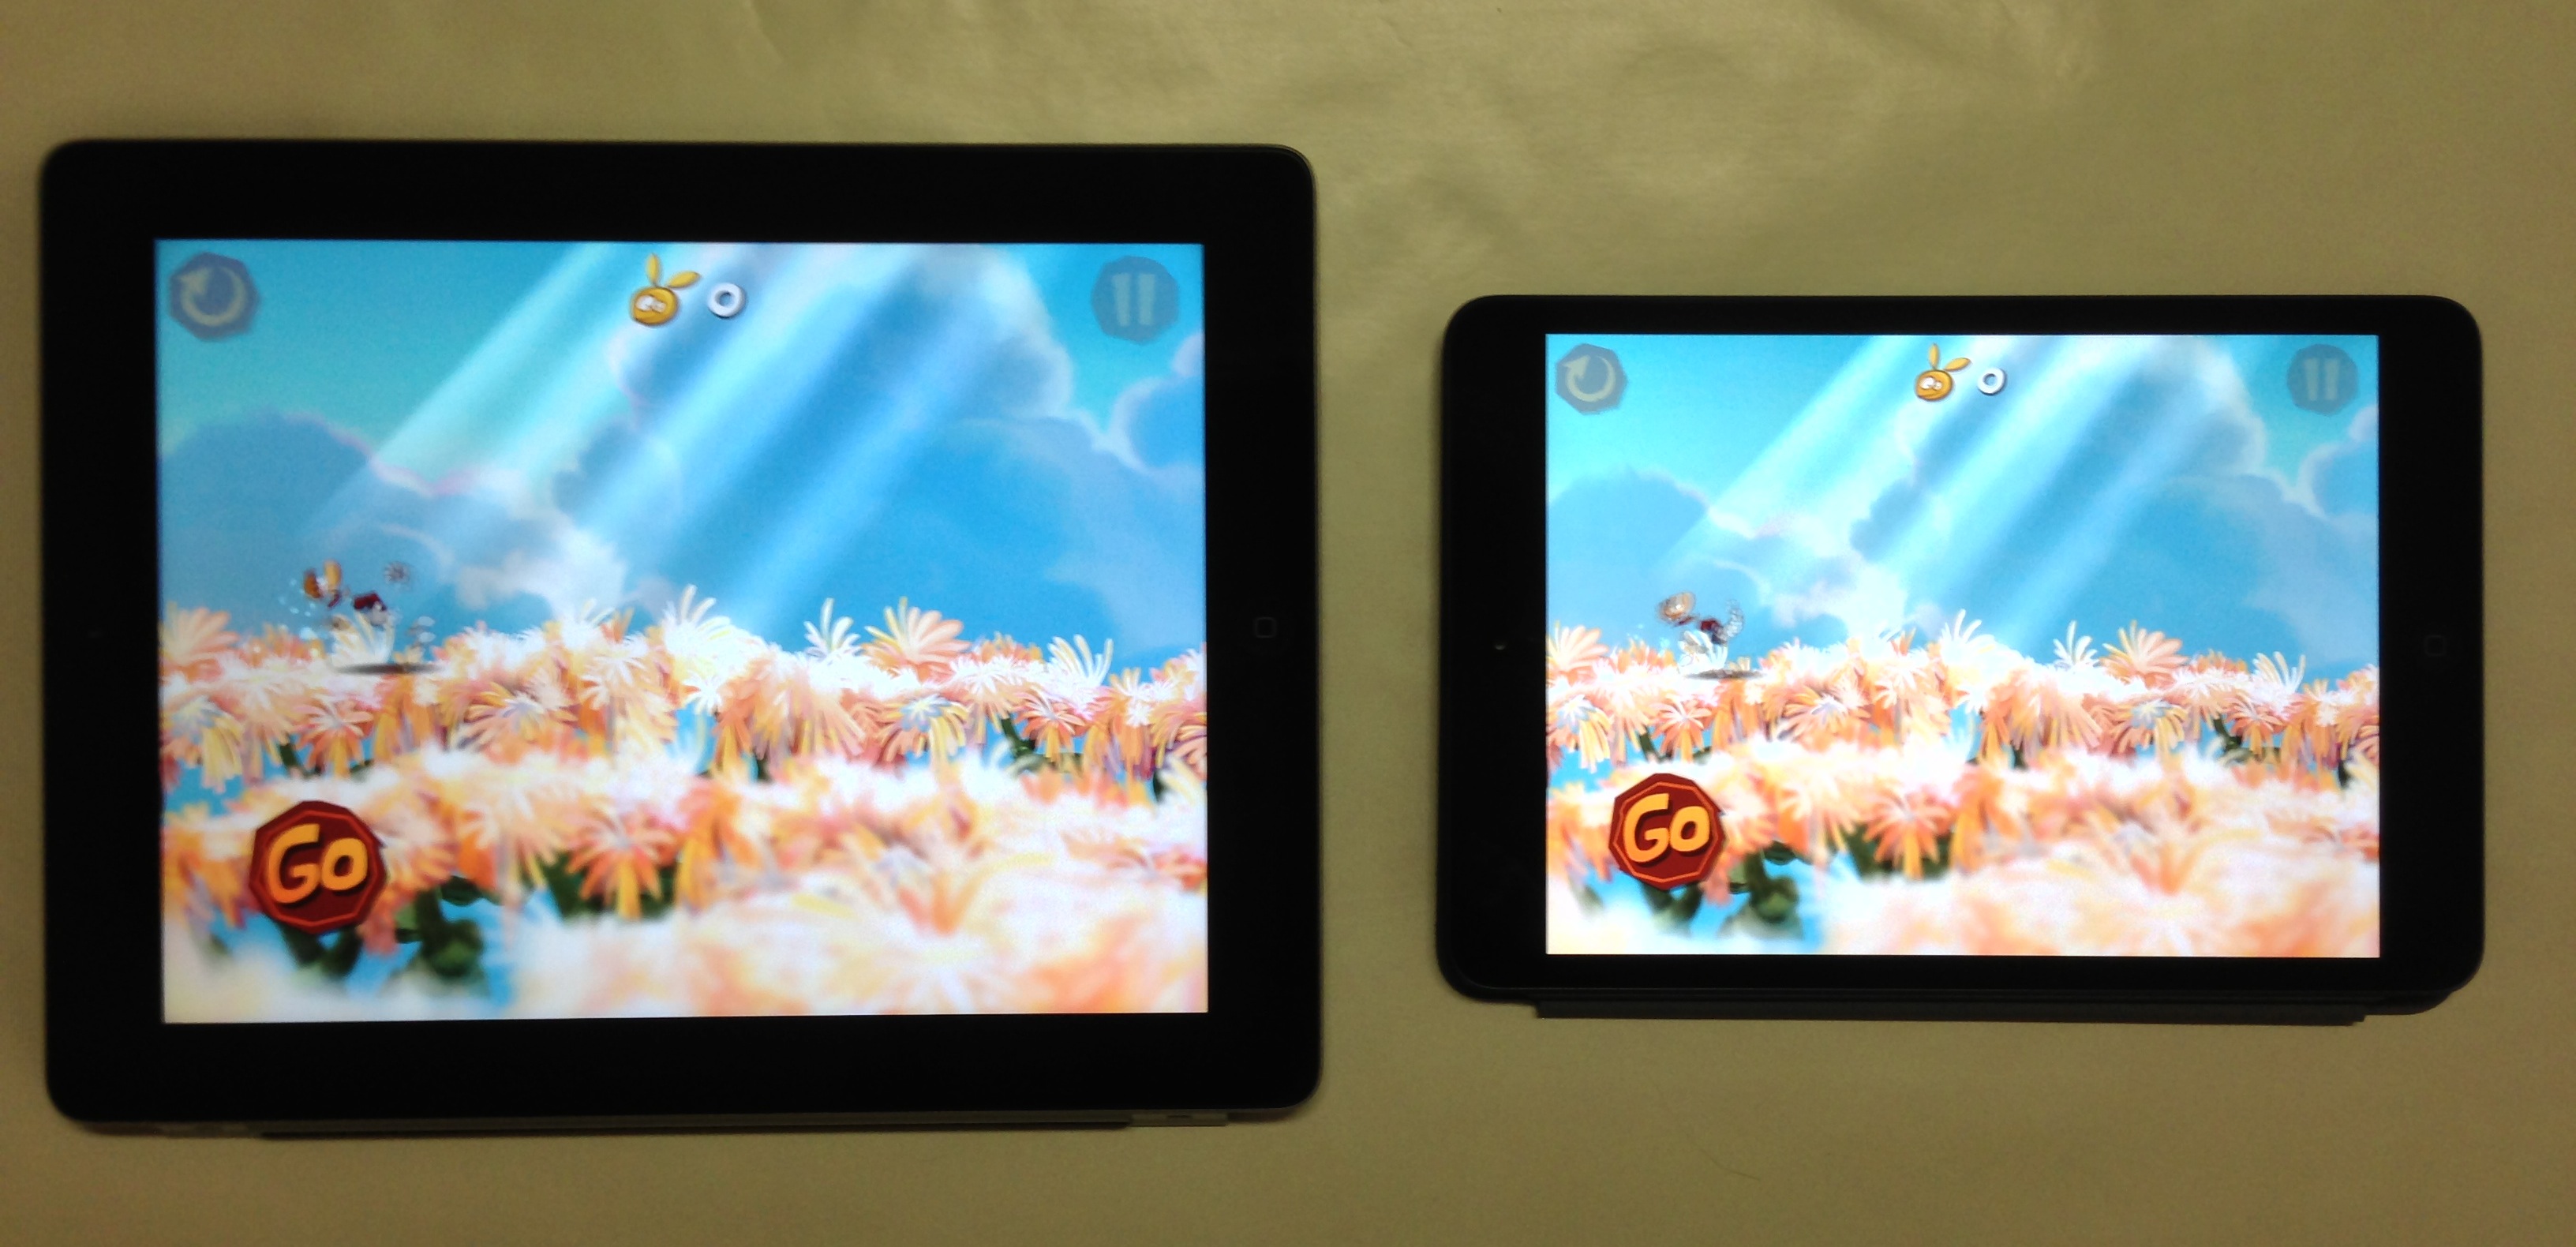 Giochi su iPad mini: alcune immagini che li comparano con le versioni per iPad di terza generazione